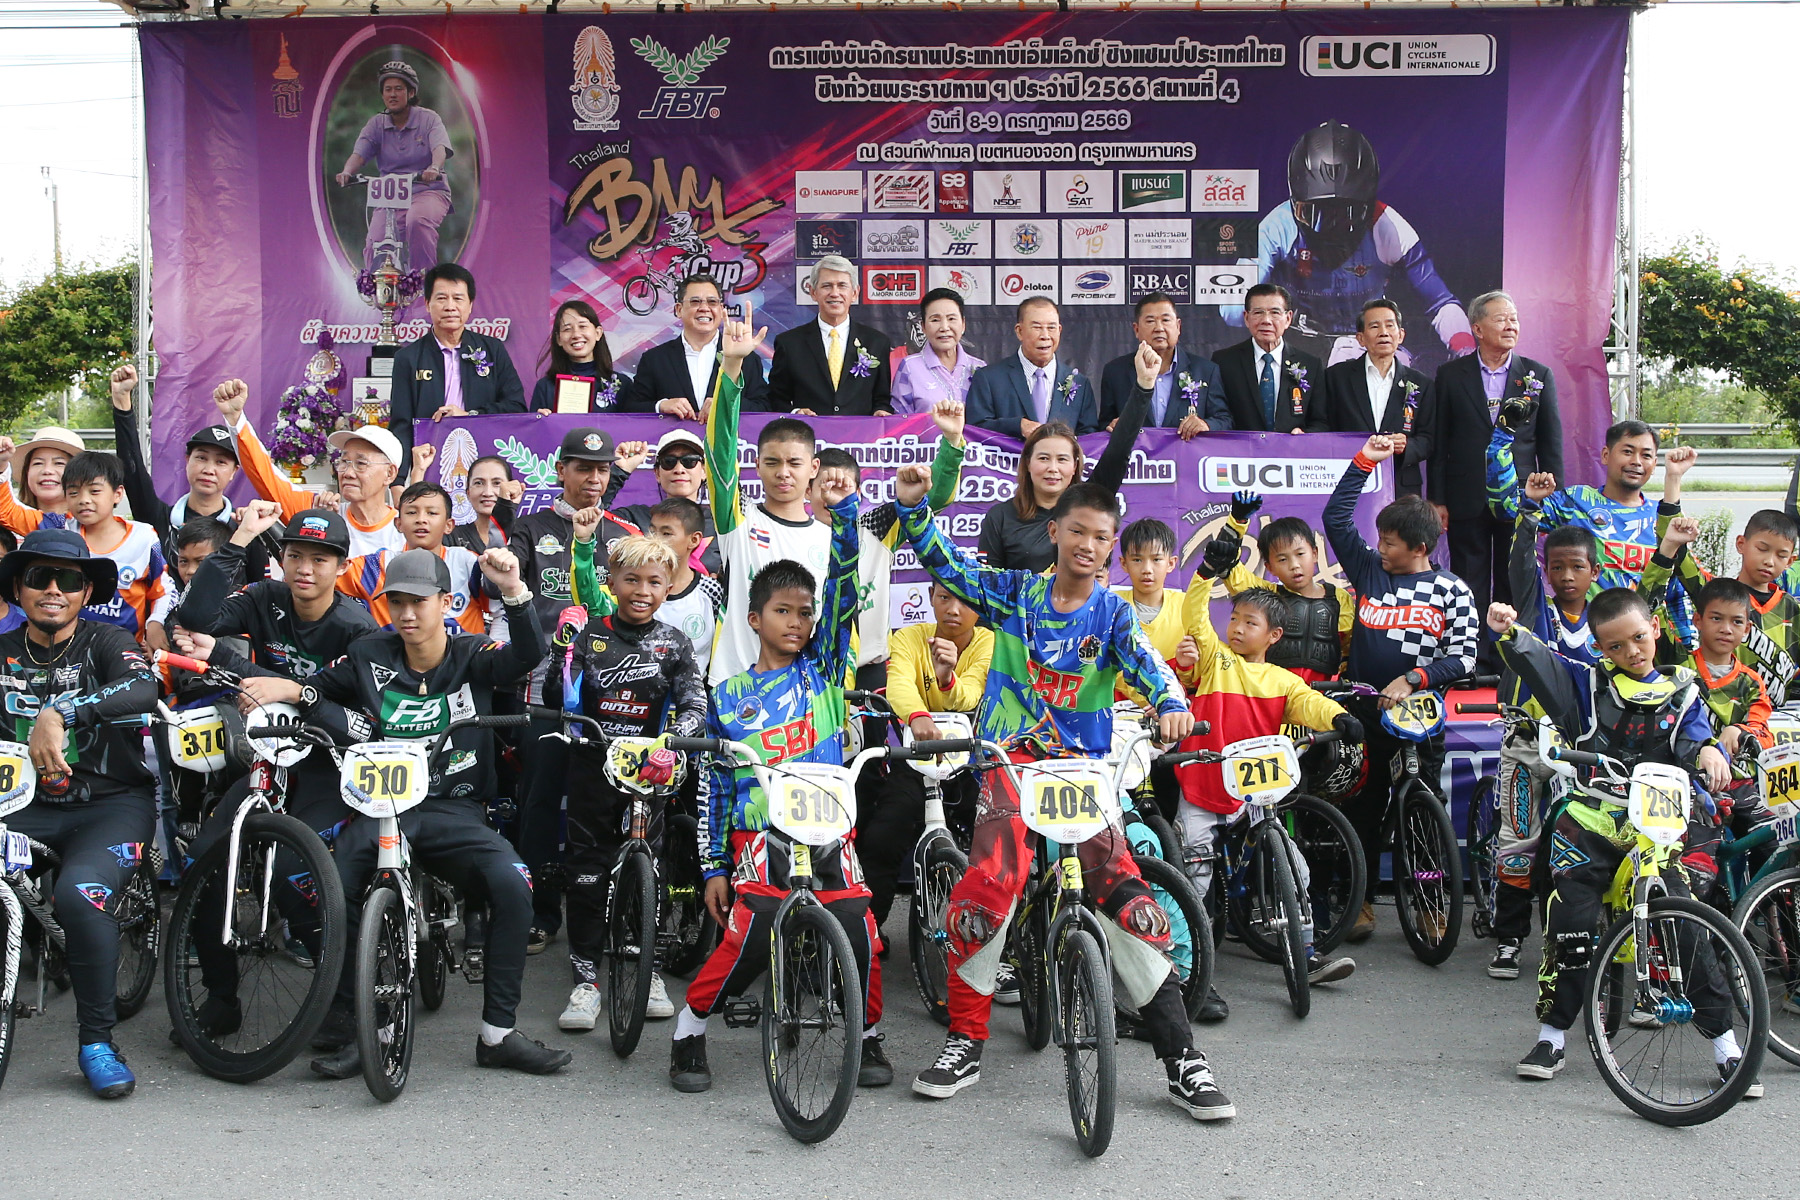 ดร.ชาญวิทย์ ผลชีวิน” รองประธาน กมธ. การกีฬา วุฒิสภา เป็นประธานในพิธีเปิดการแข่งขันจักรยานบีเอ็มเอ็กซ์ ชิงแชมป์ประเทศไทย ชิงถ้วยพระราชทาน สมเด็จพระกนิษฐาธิราช กรมสมเด็จพระเทพรัตนราชสุดาฯ สยามบรมราชกุมารี